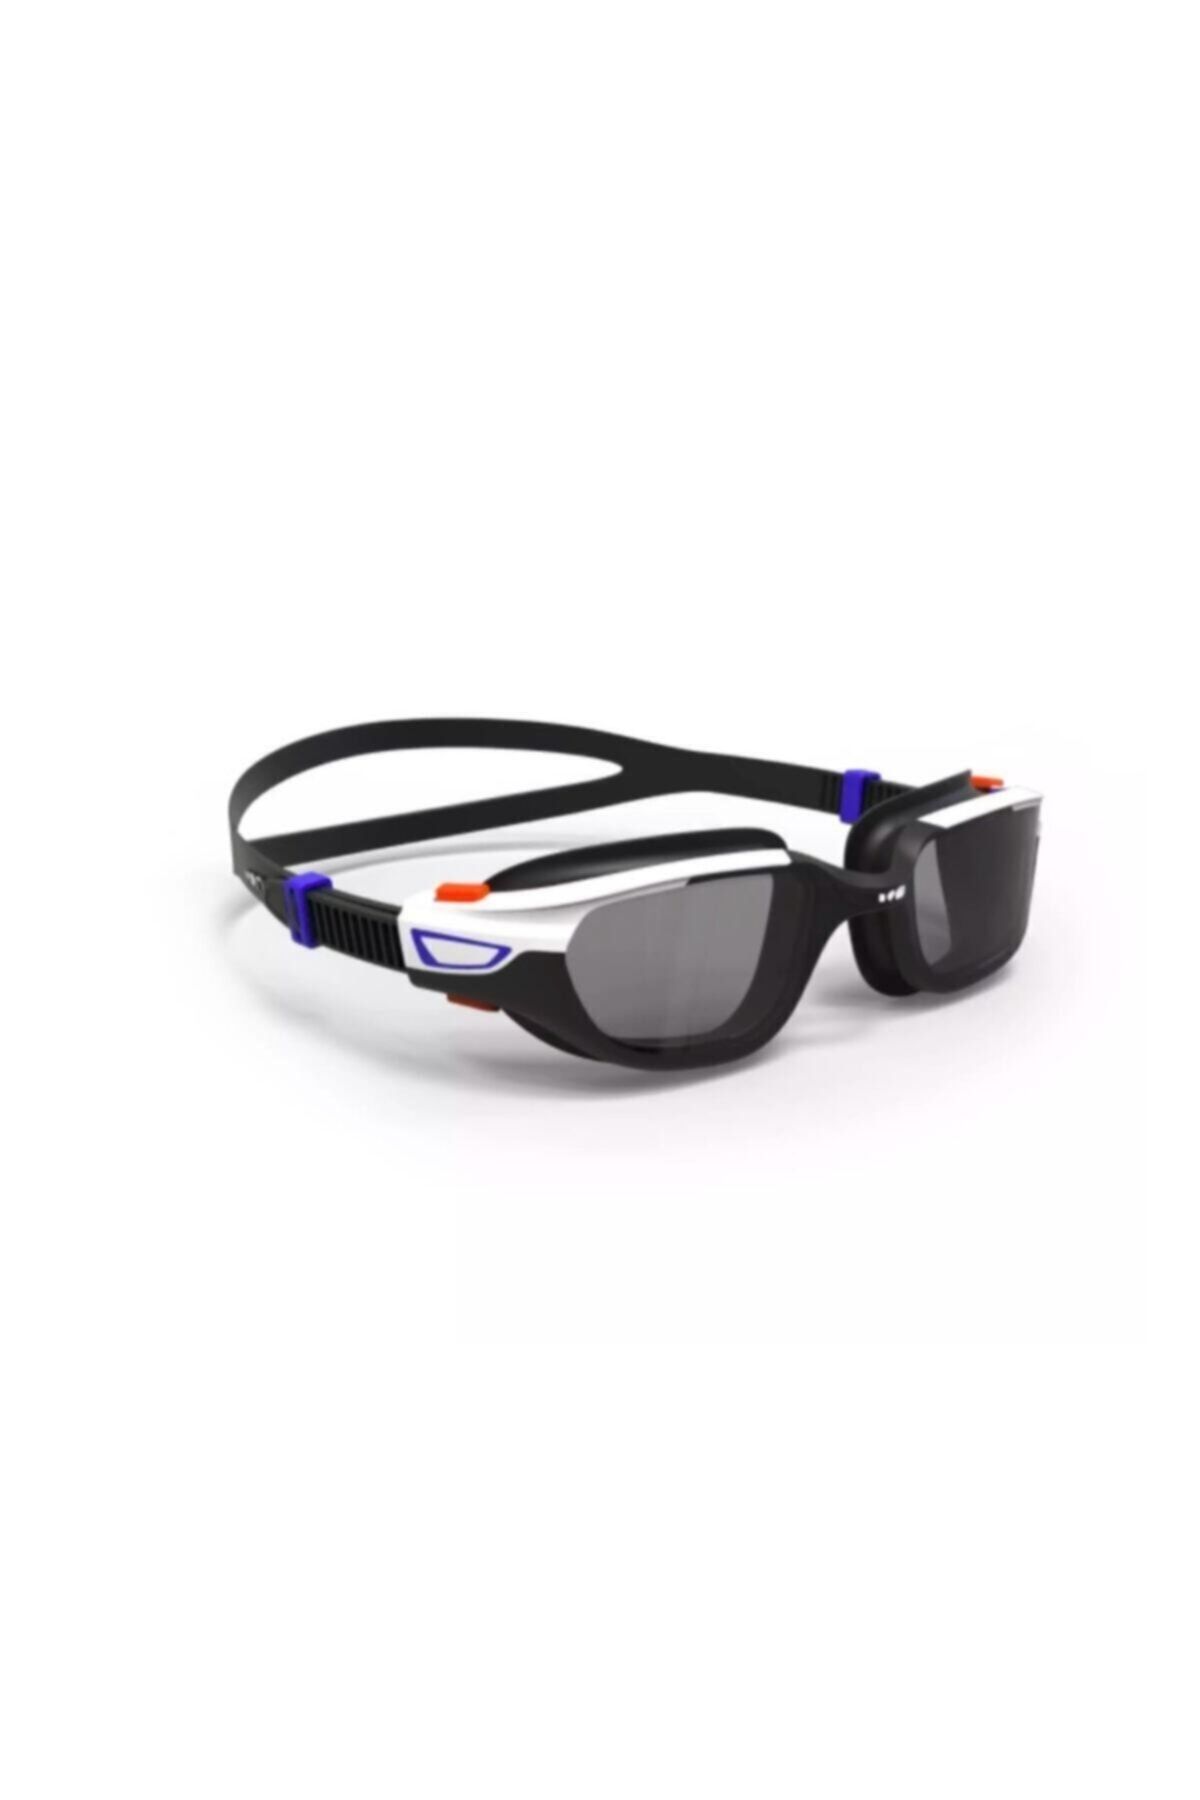 Decathlon - Yetişkin Deniz Gözlüğü Yüzücü Gözlüğü Beyaz Siyah Füme Camlar L Boy Spırıt